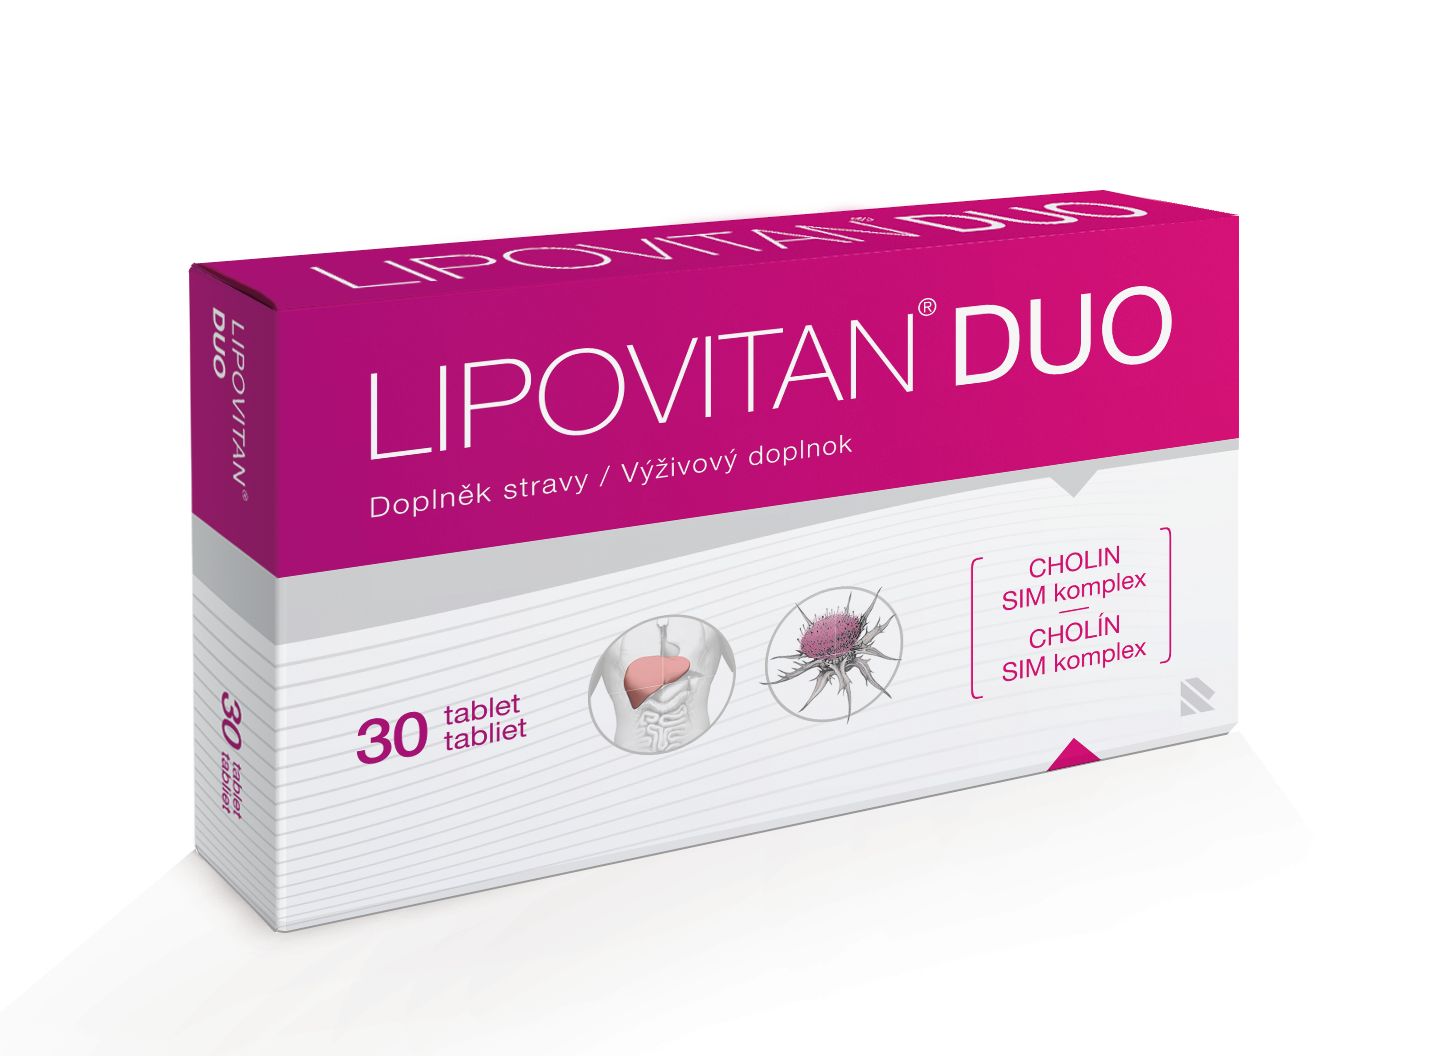 Lipovitan DUO 30 tablet Lipovitan